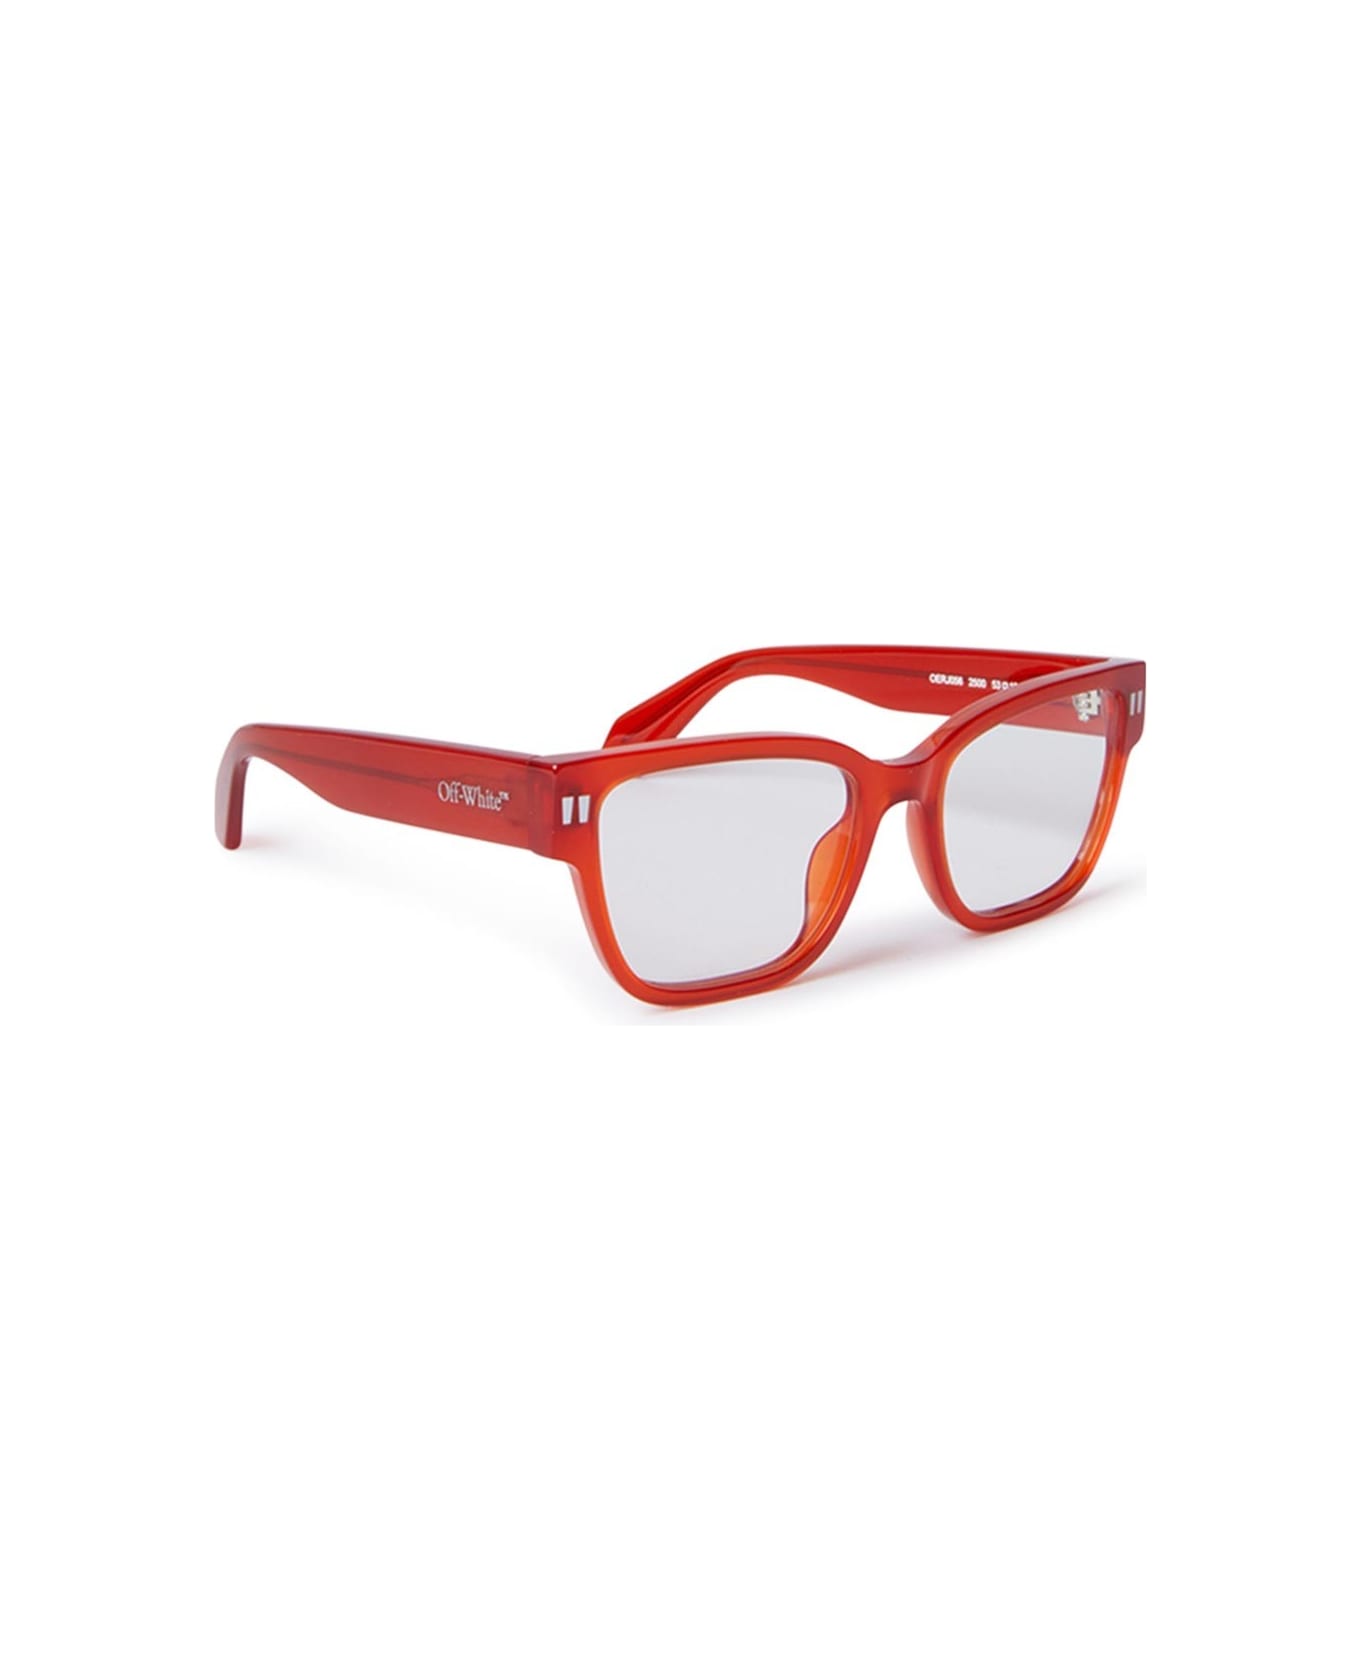 Off-White Glasses - Rosso